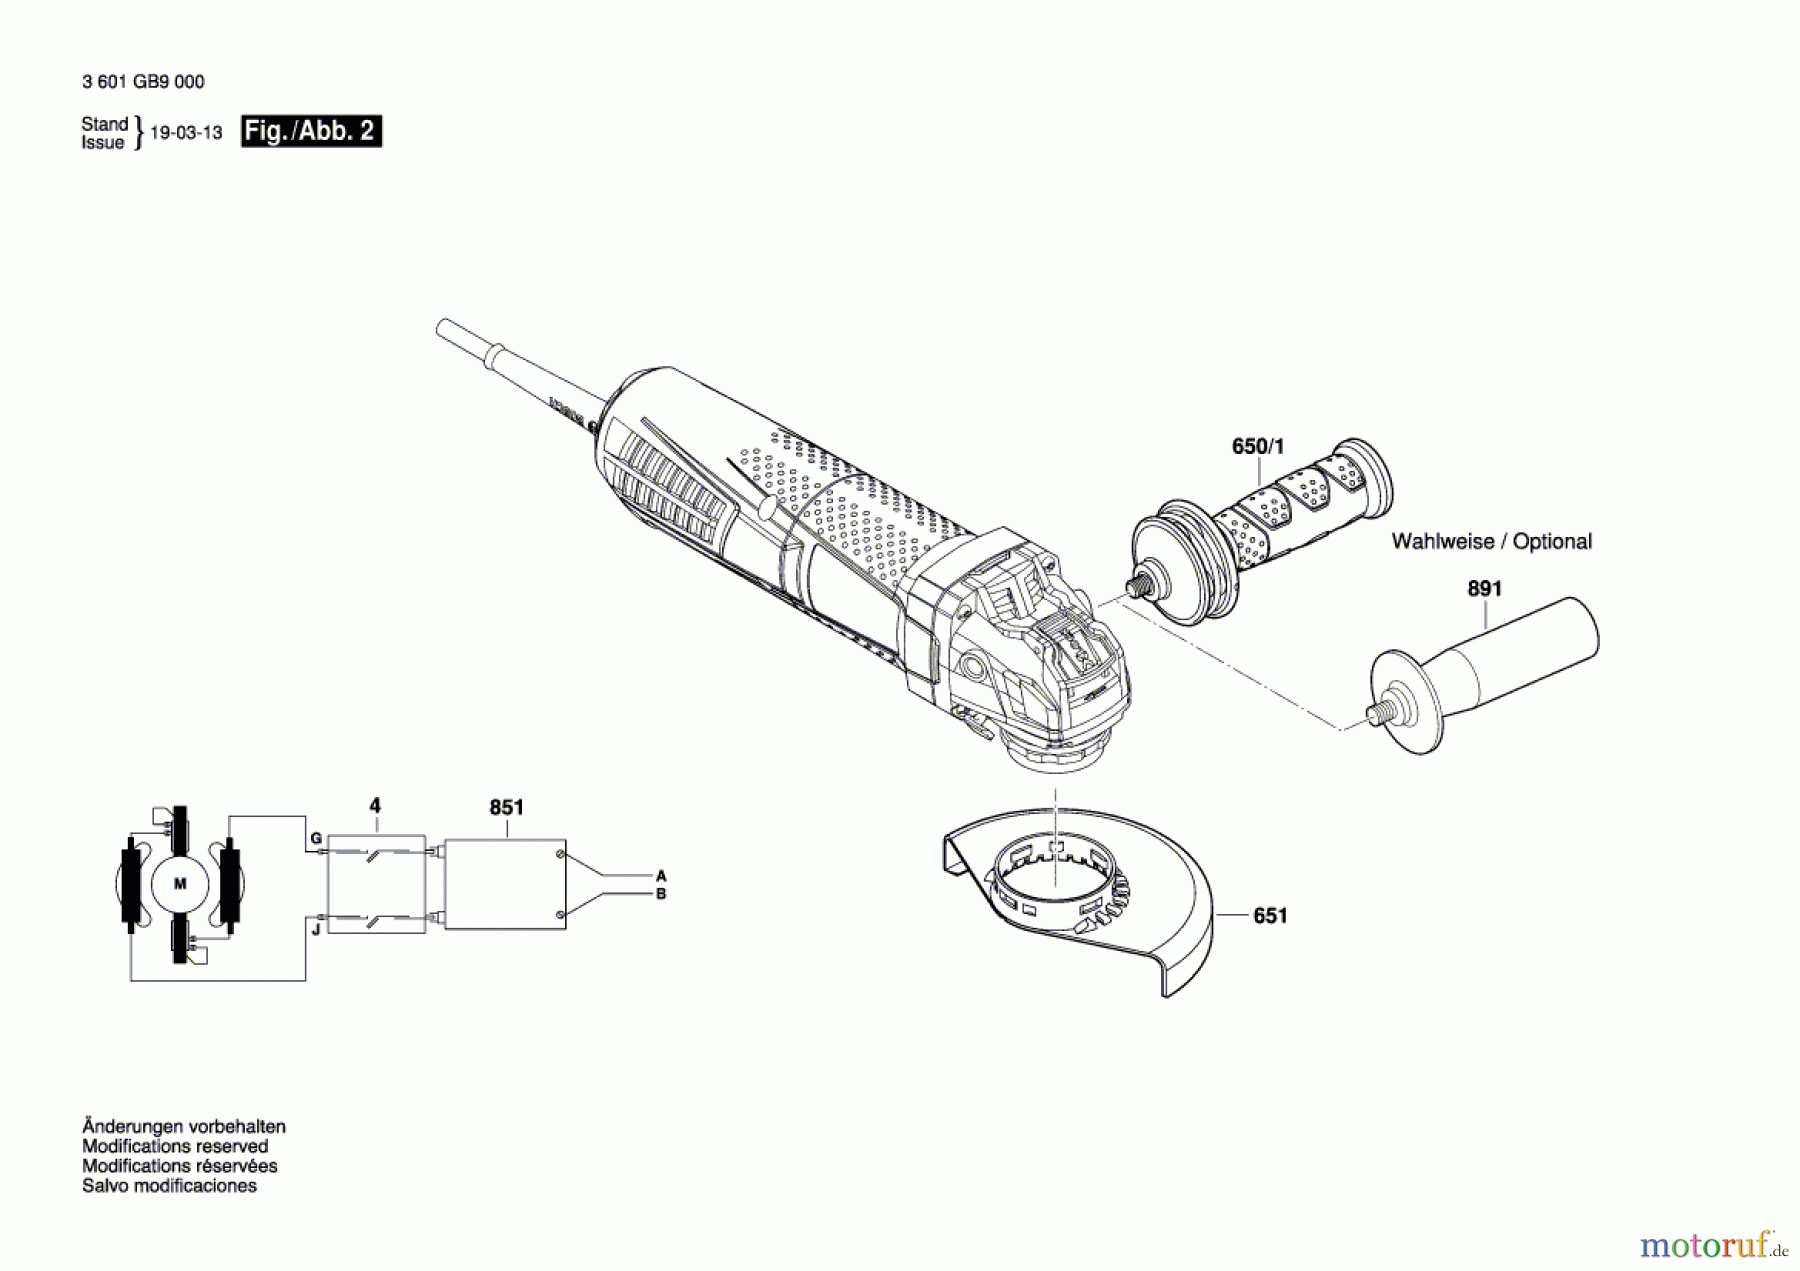  Bosch Werkzeug Winkelschleifer GWX 15-125 PS Seite 2